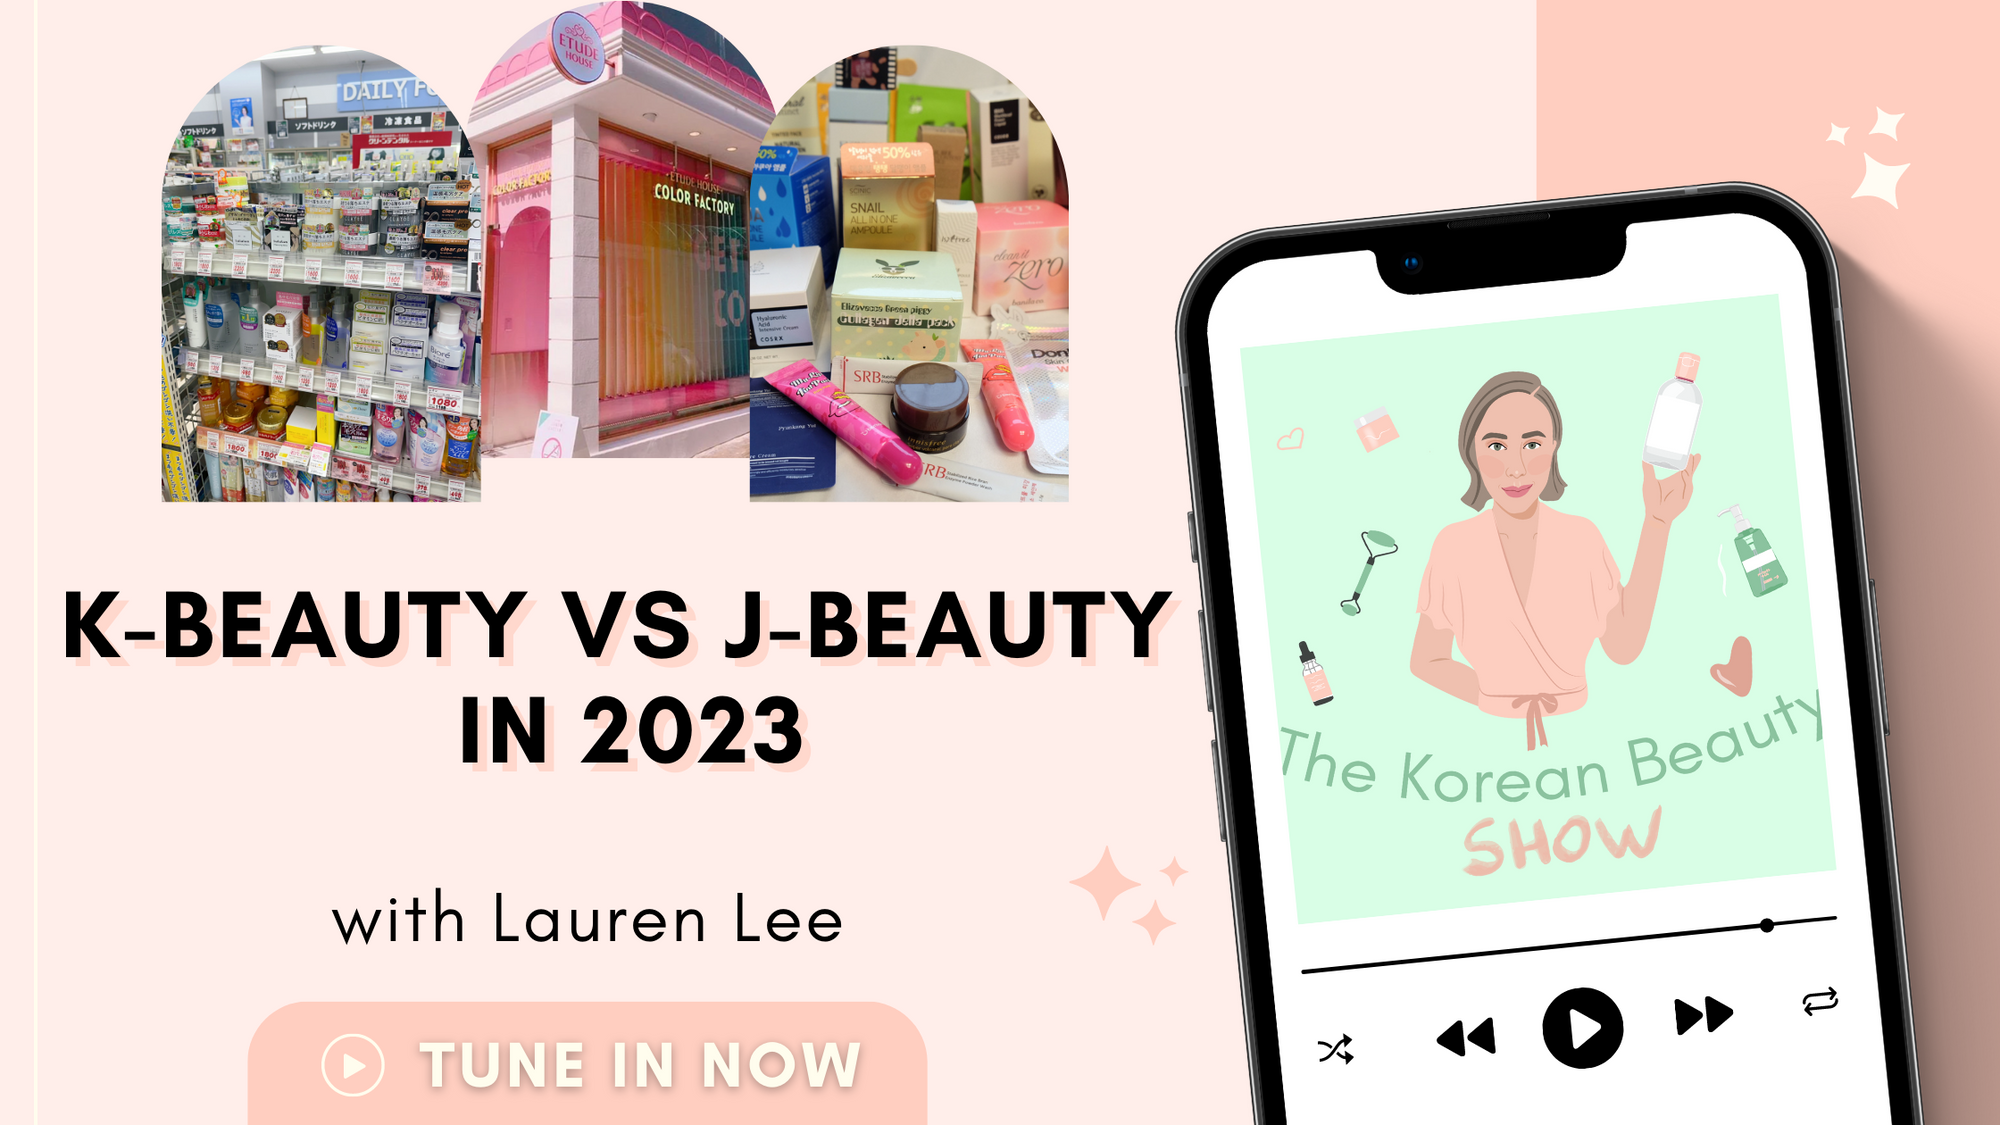 K-Beauty vs J-Beauty in 2023